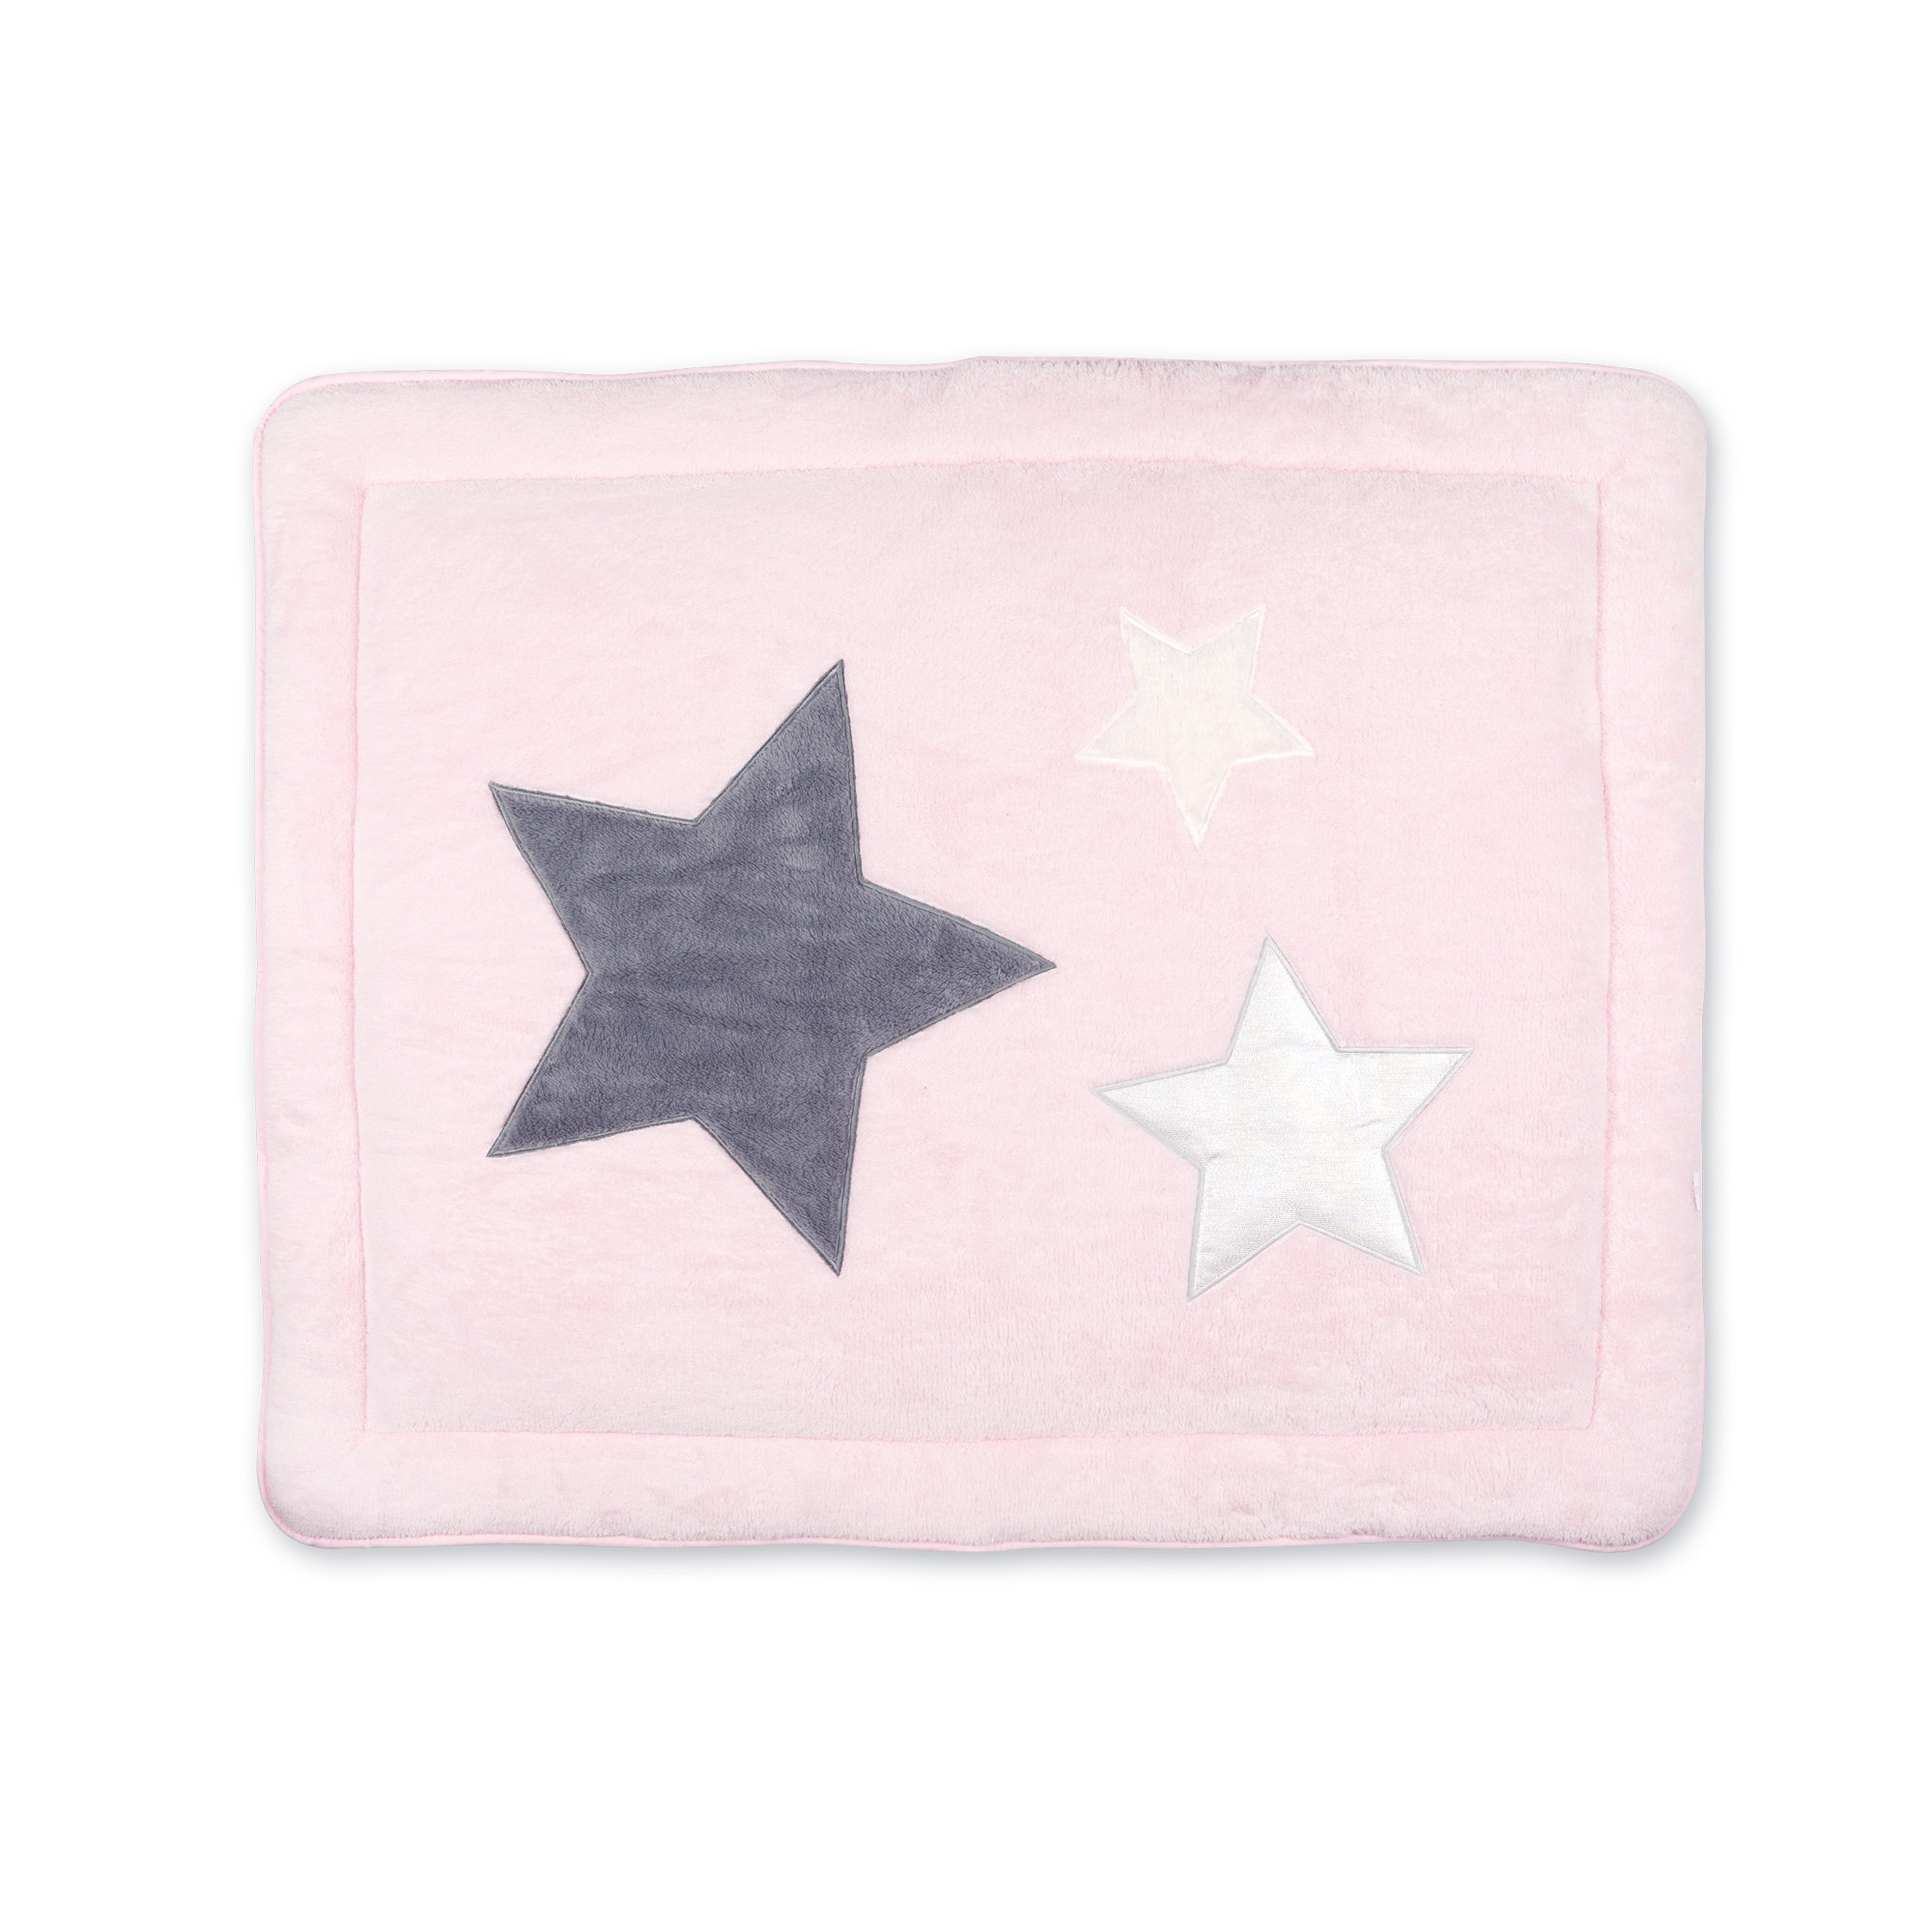 Laufstalleinlage Krabbeldecke Pady softy + terry 75x95cm STARY Baby rosa kleine Sterne